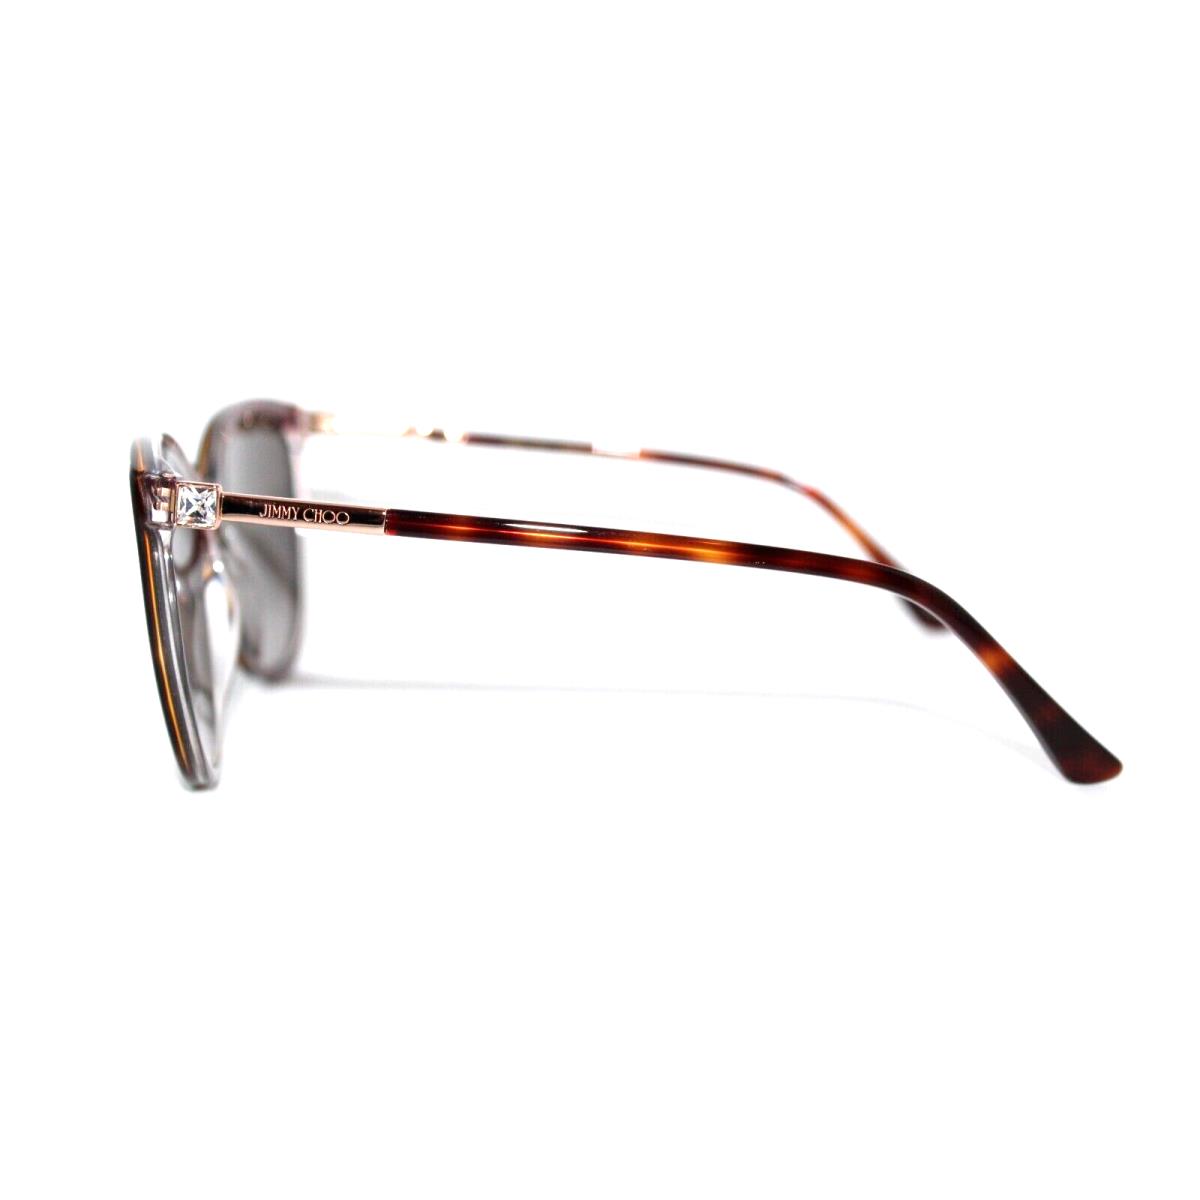 Jimmy Choo sunglasses  - Tortoise Frame, Brown Lens